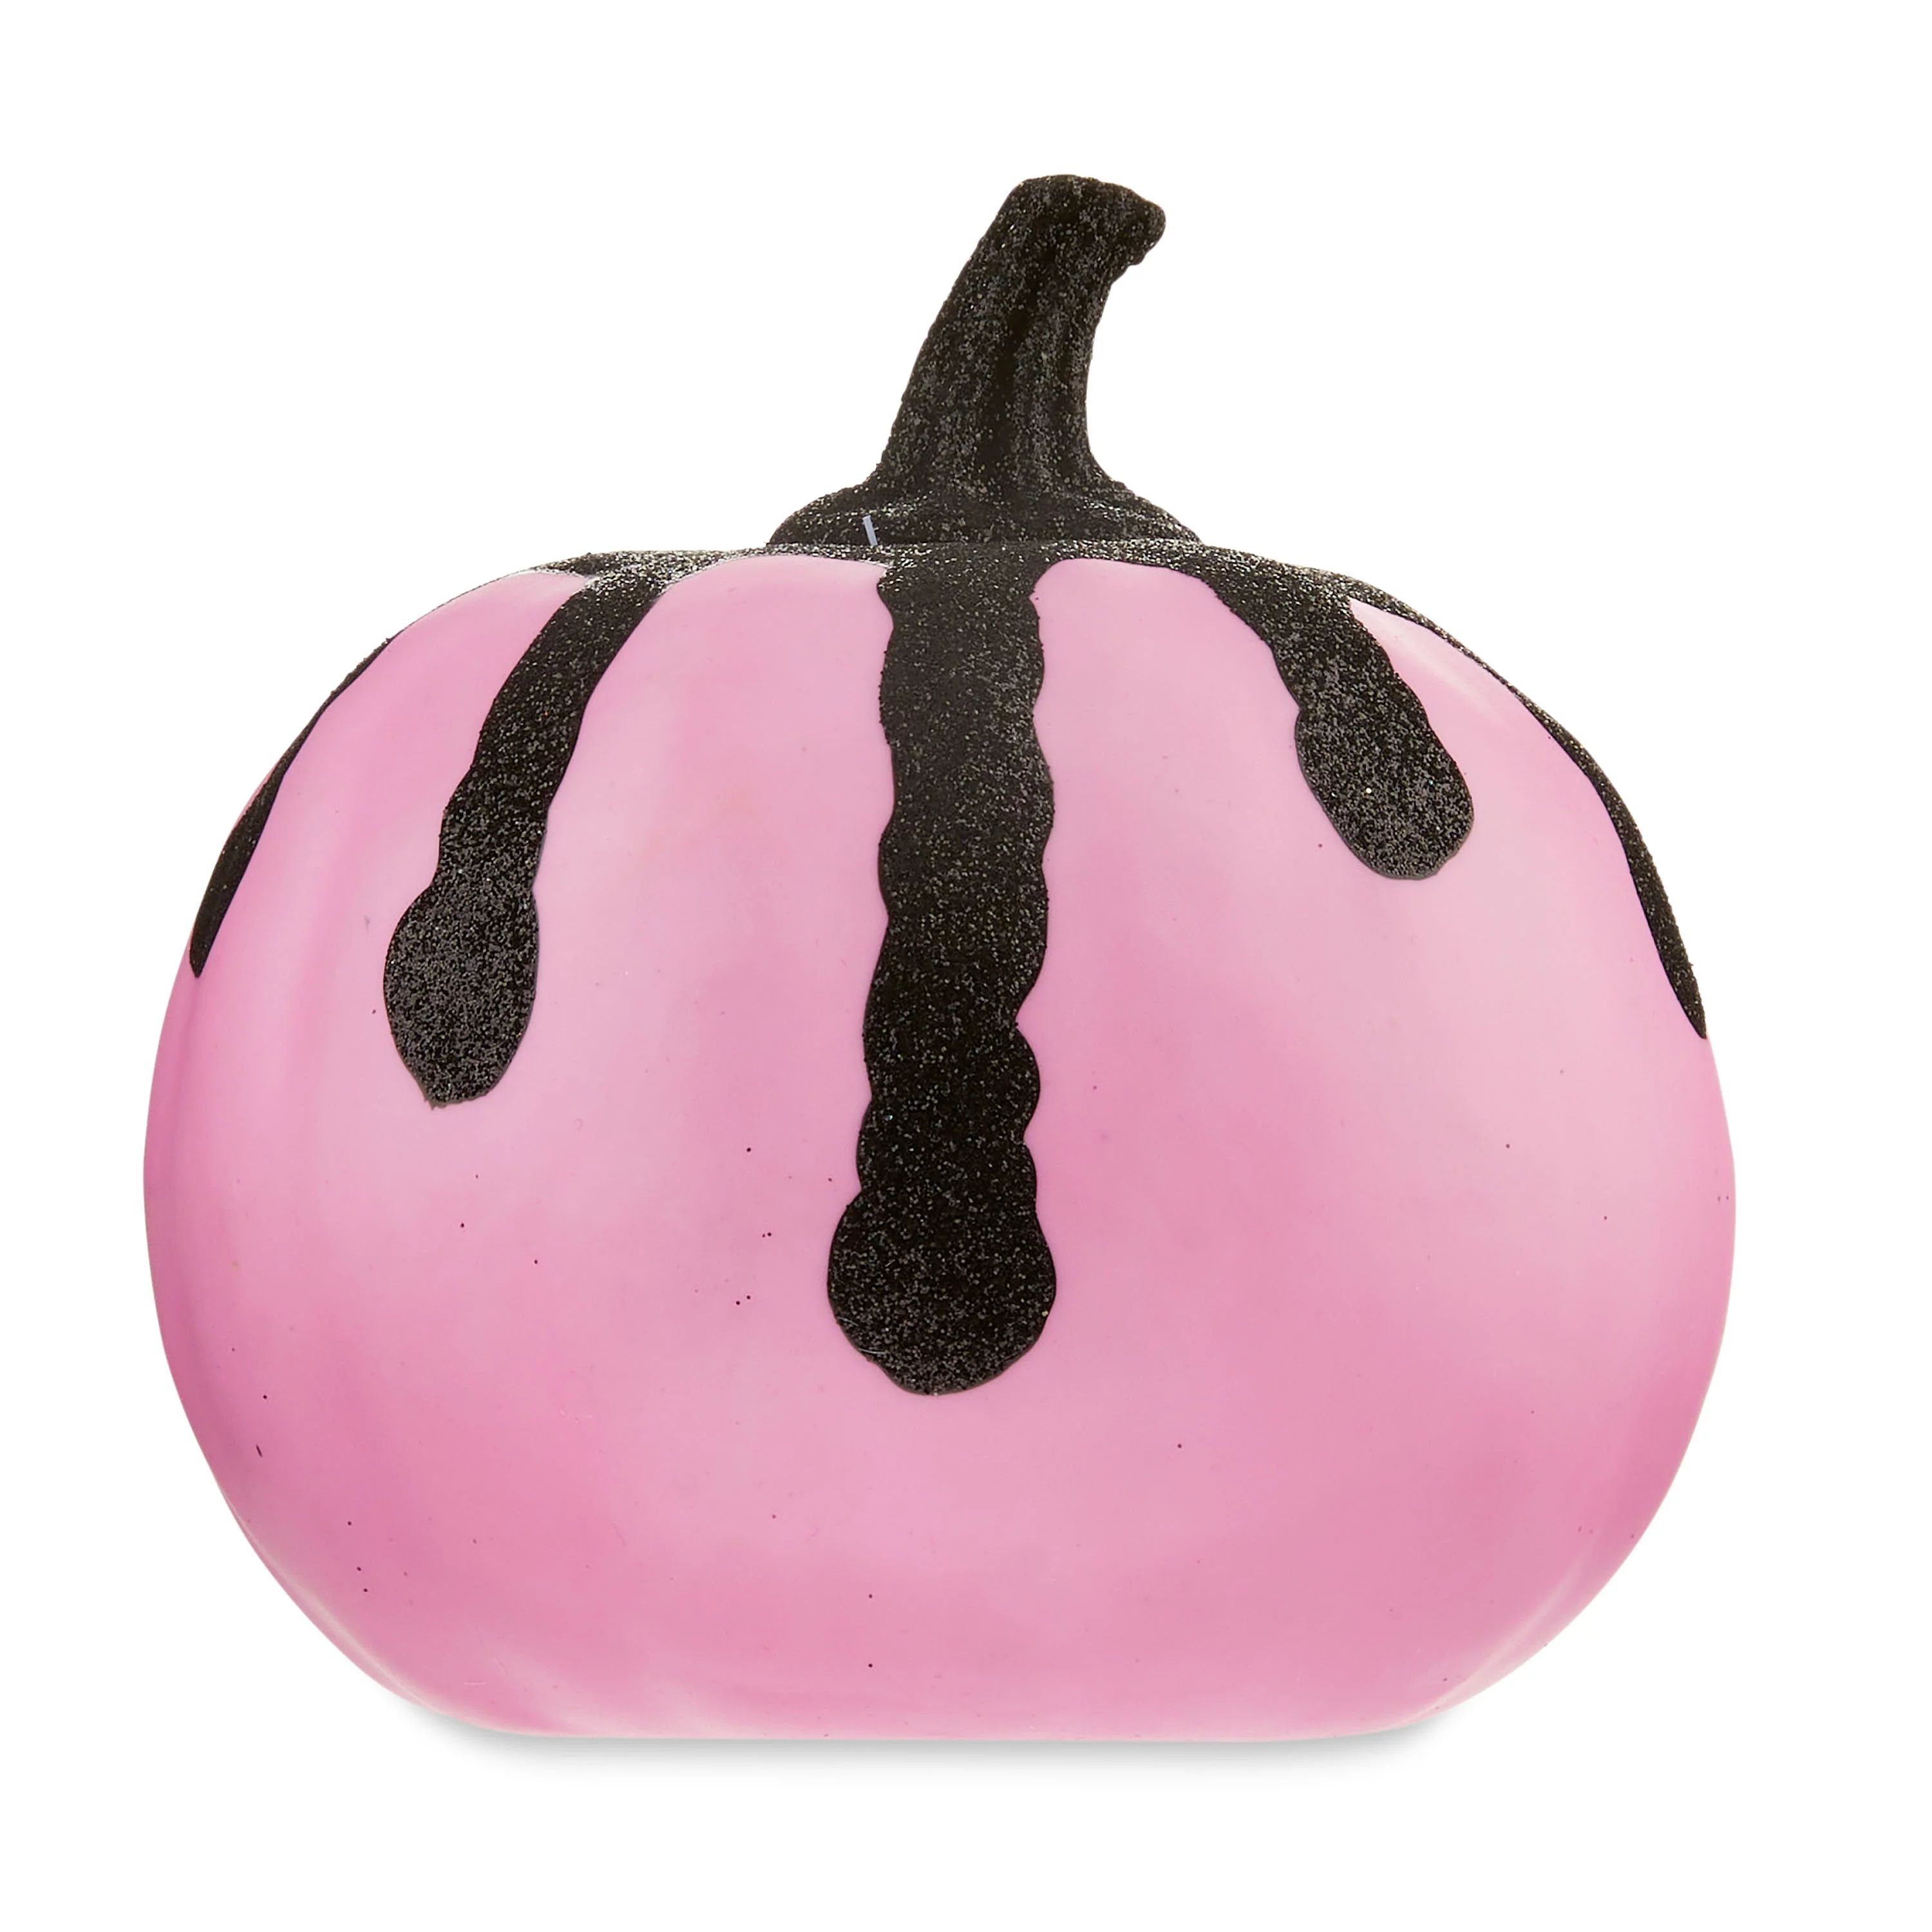 Halloween Mini Pink Foam Pumpkin Decoration, 5 in x 5 in x 4.75 in, by Way To Celebrate | Walmart (US)